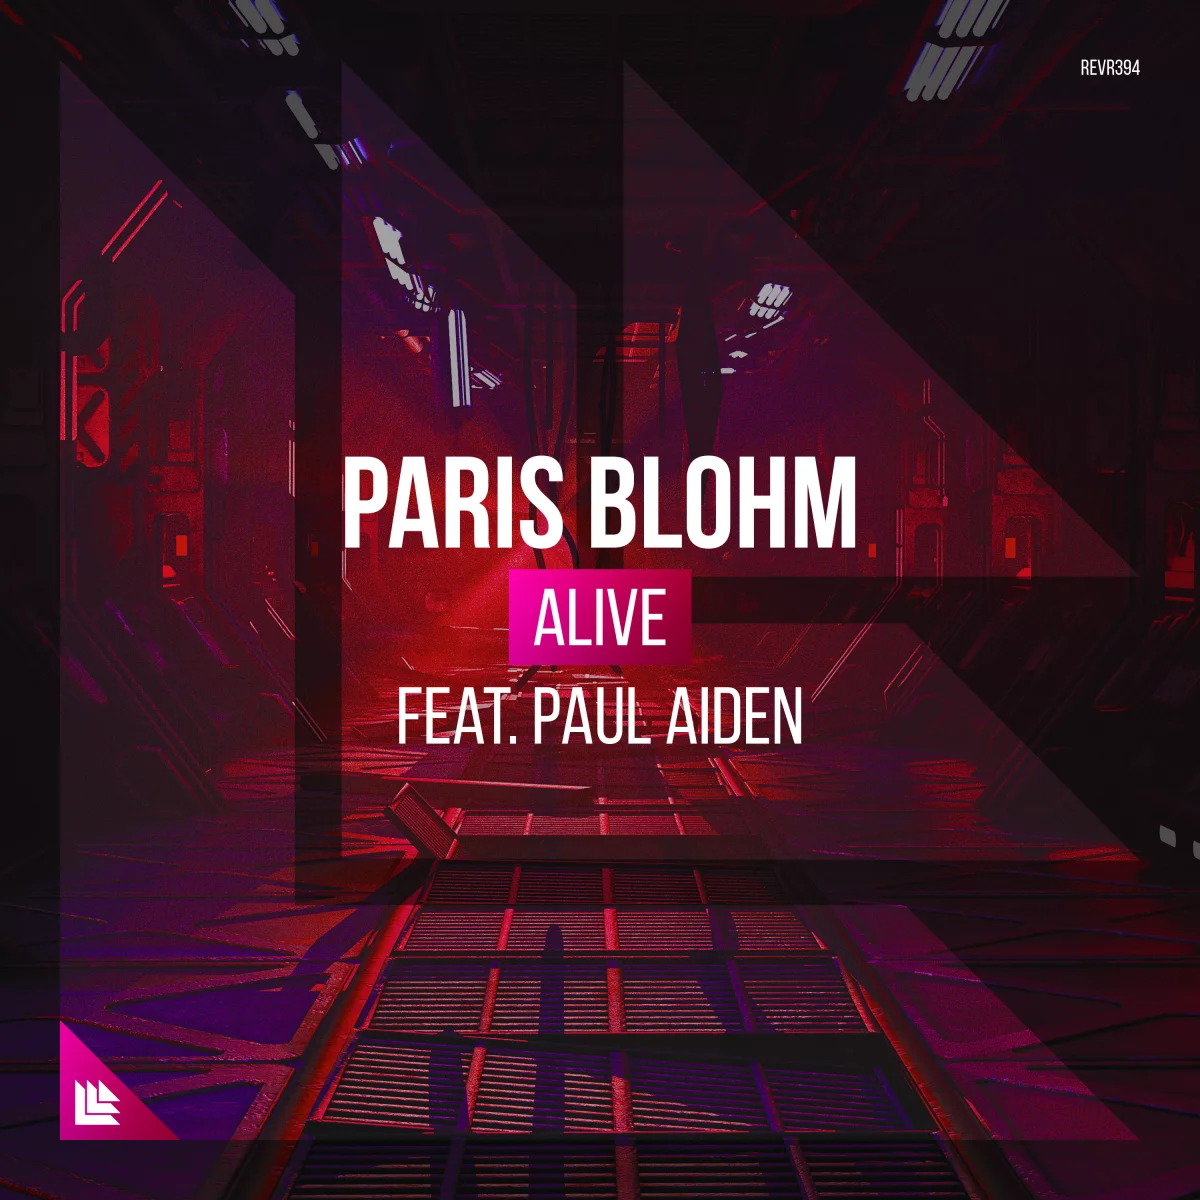 Alive - Paris Blohm⁠ feat. Paul Aiden